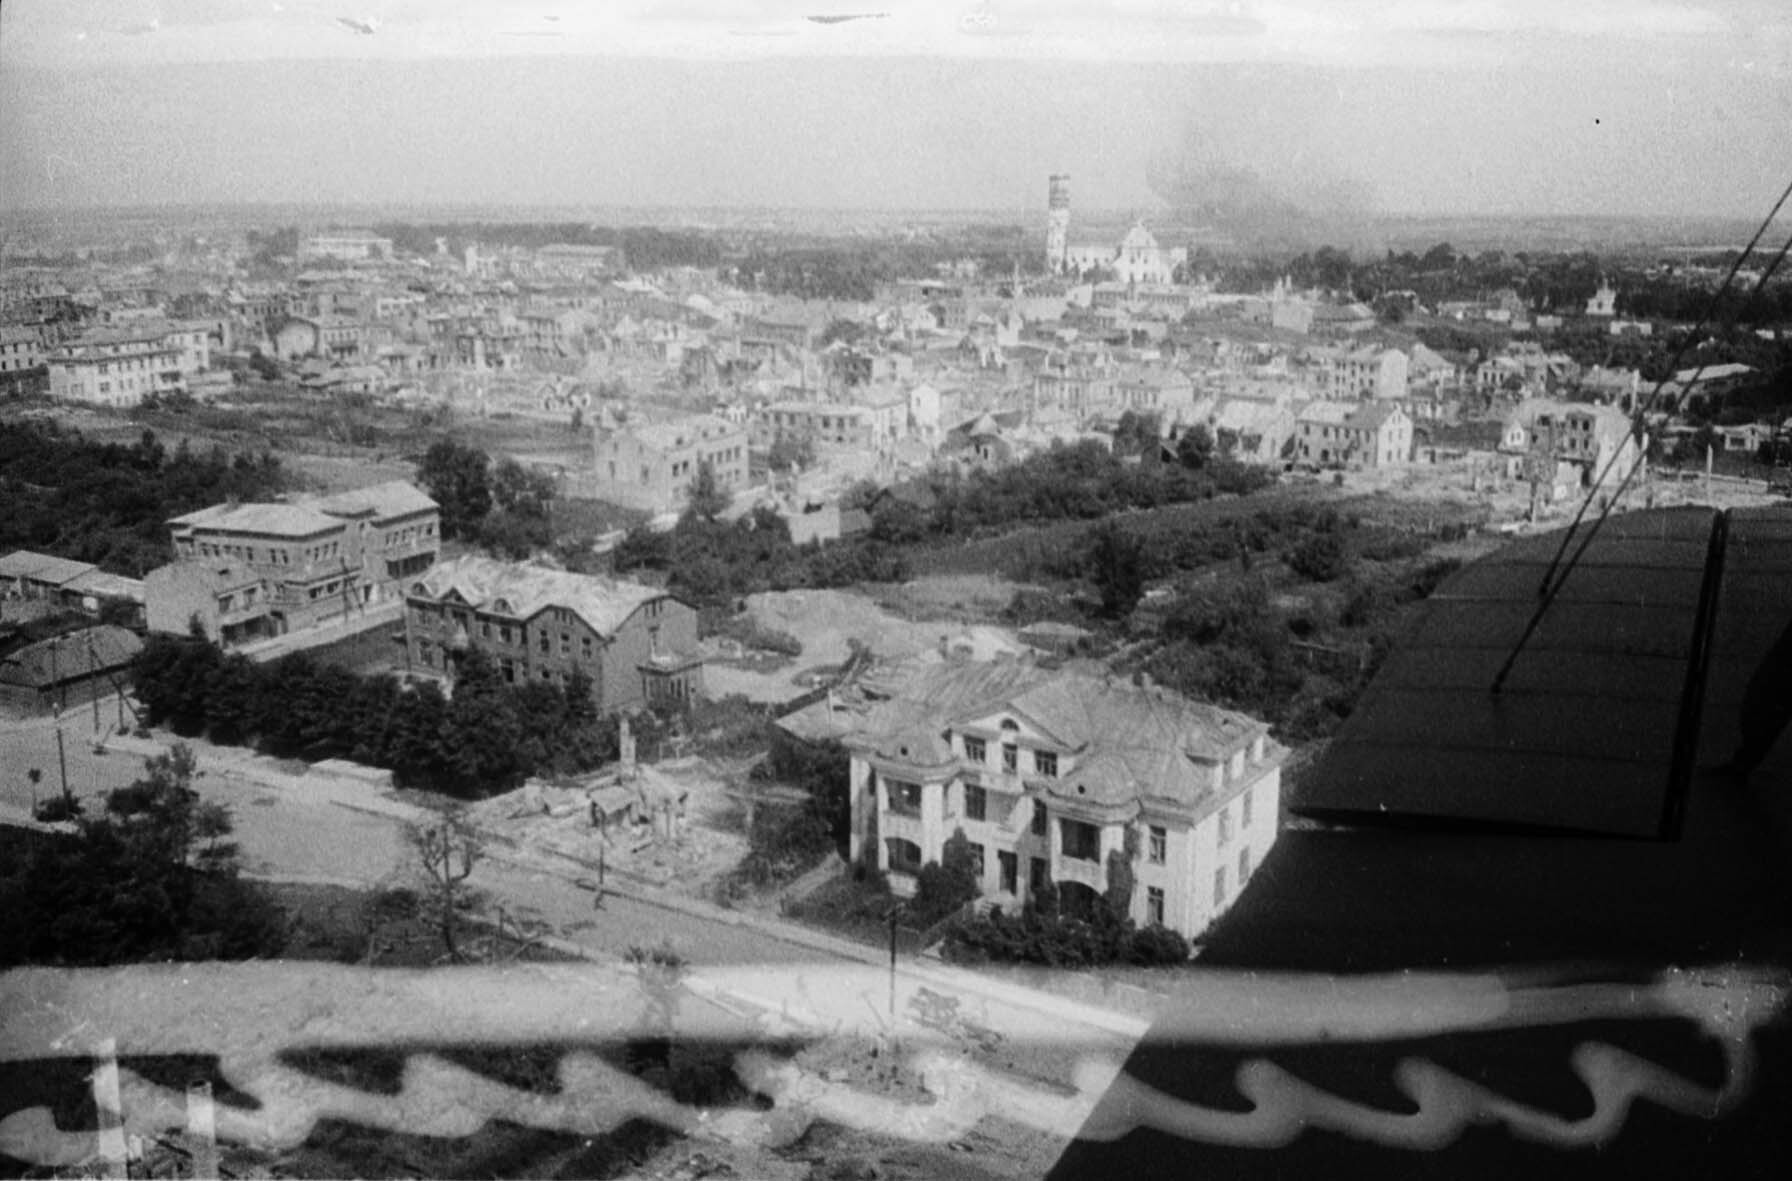 Fotografie: Luftaufnahme von Siauliai, Litauen, 29. Juli 1944 (Museum Berlin-Karlshorst RR-P)